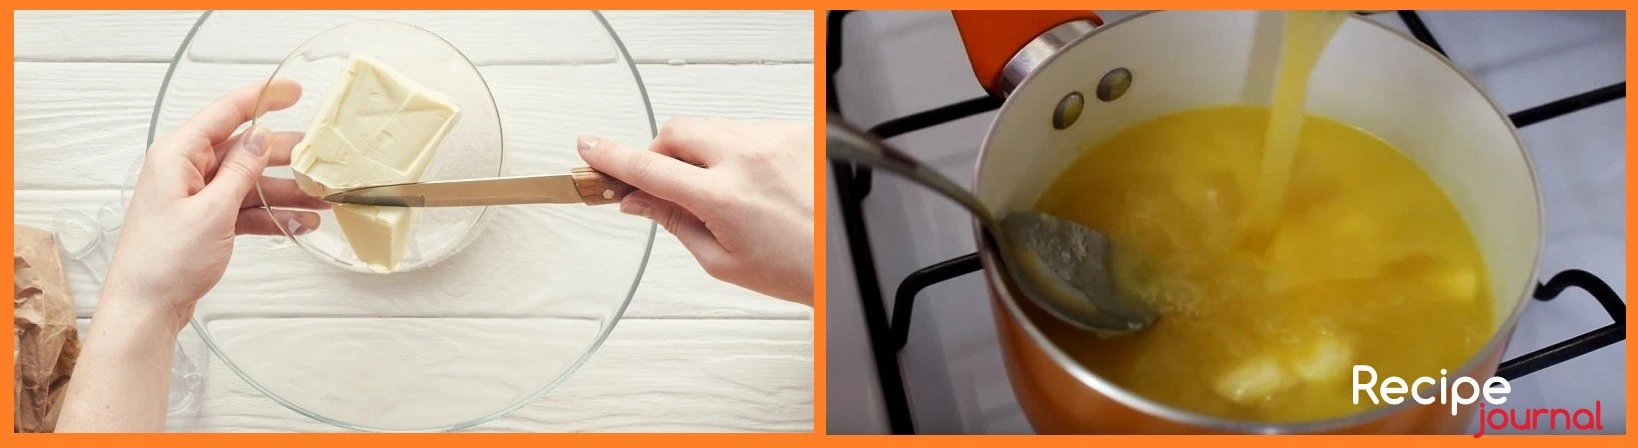 Готовим апельсиновый соус. В миске смешиваем сок, сахар и масло, подогреваем на водяной бане или в микроволновке.